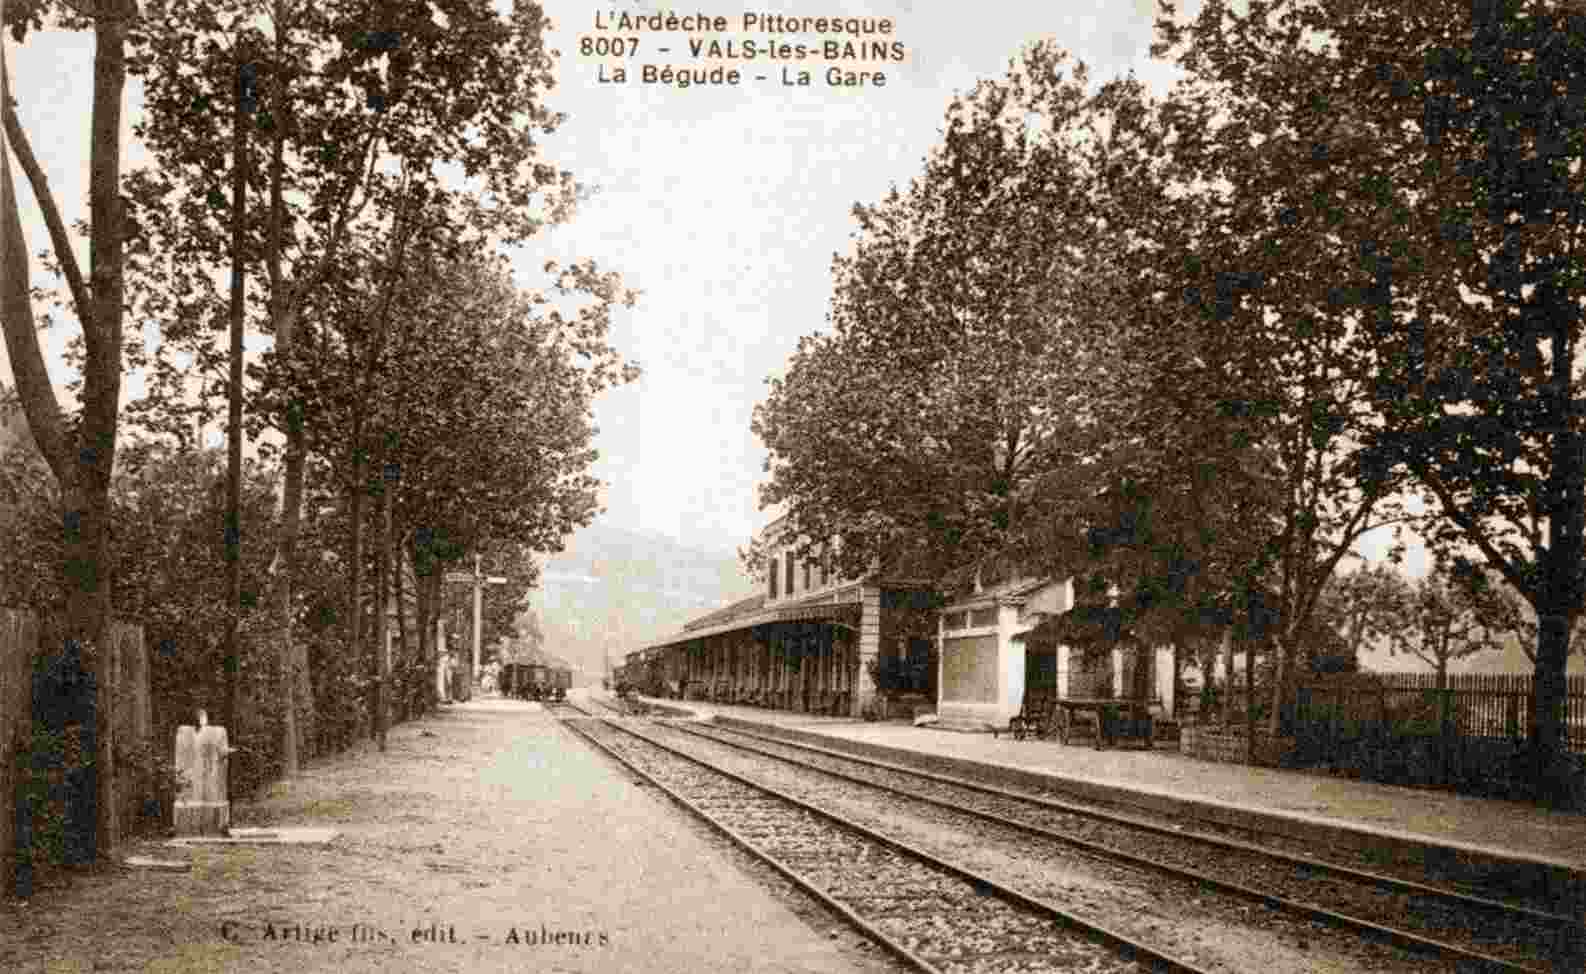 Gare de Vals-les-Bains - Labégude